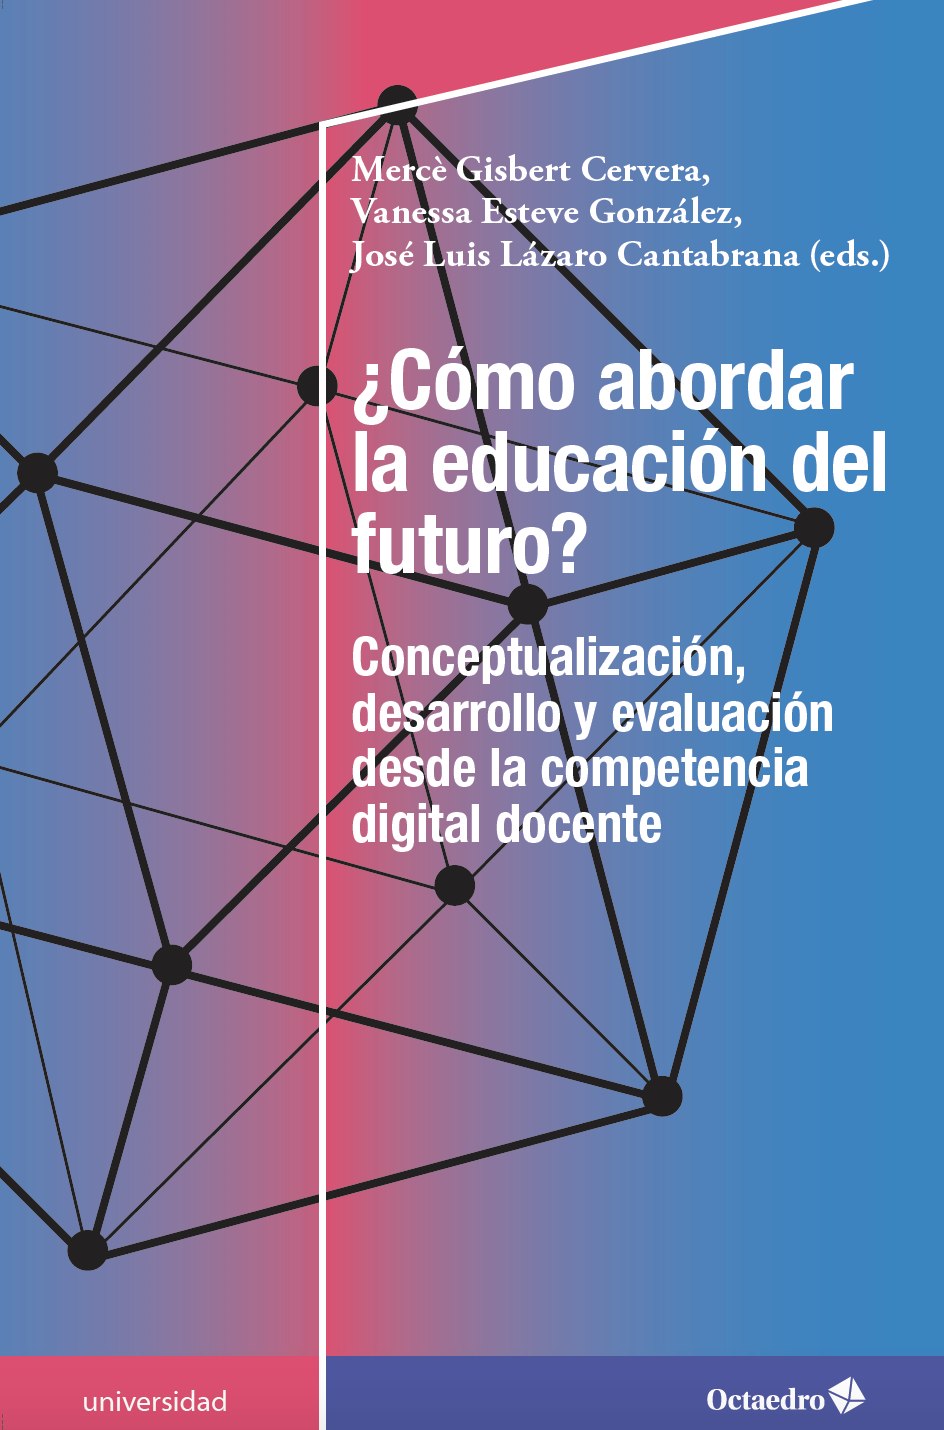 Nova publicació –¿CÓMO ABORDAR LA EDUCACIÓN DEL FUTURO?